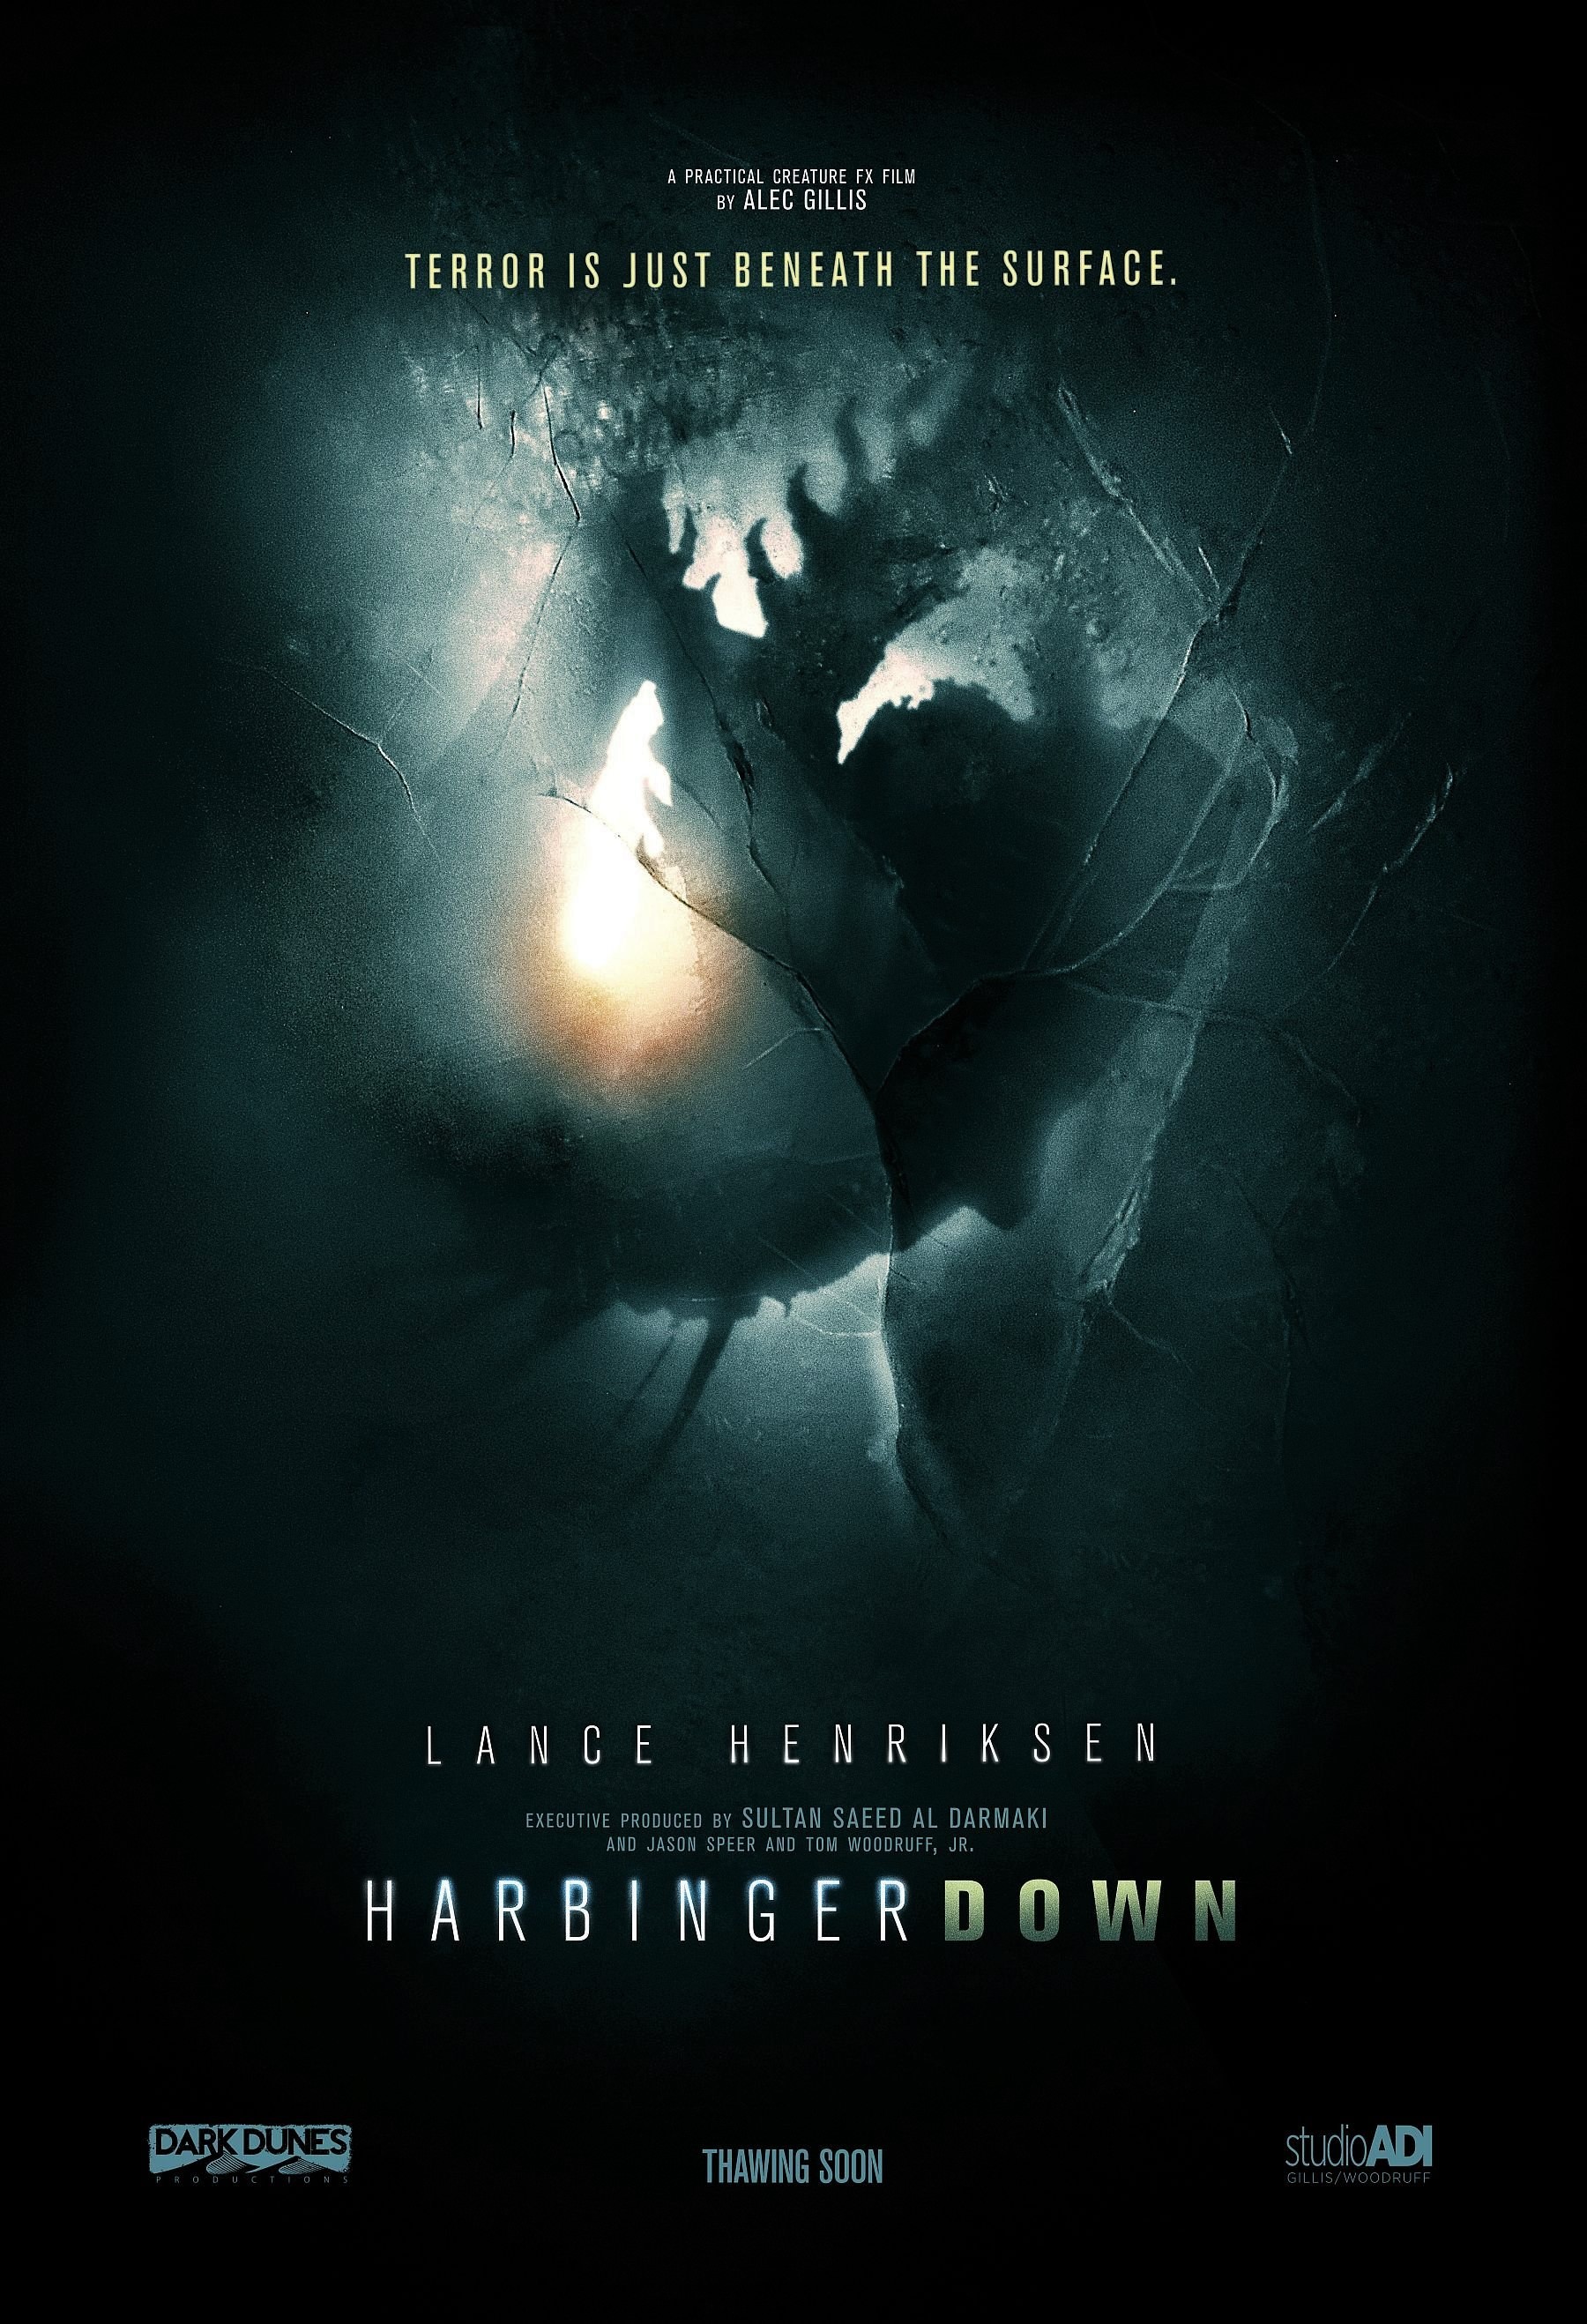 harbinger_down-p999965